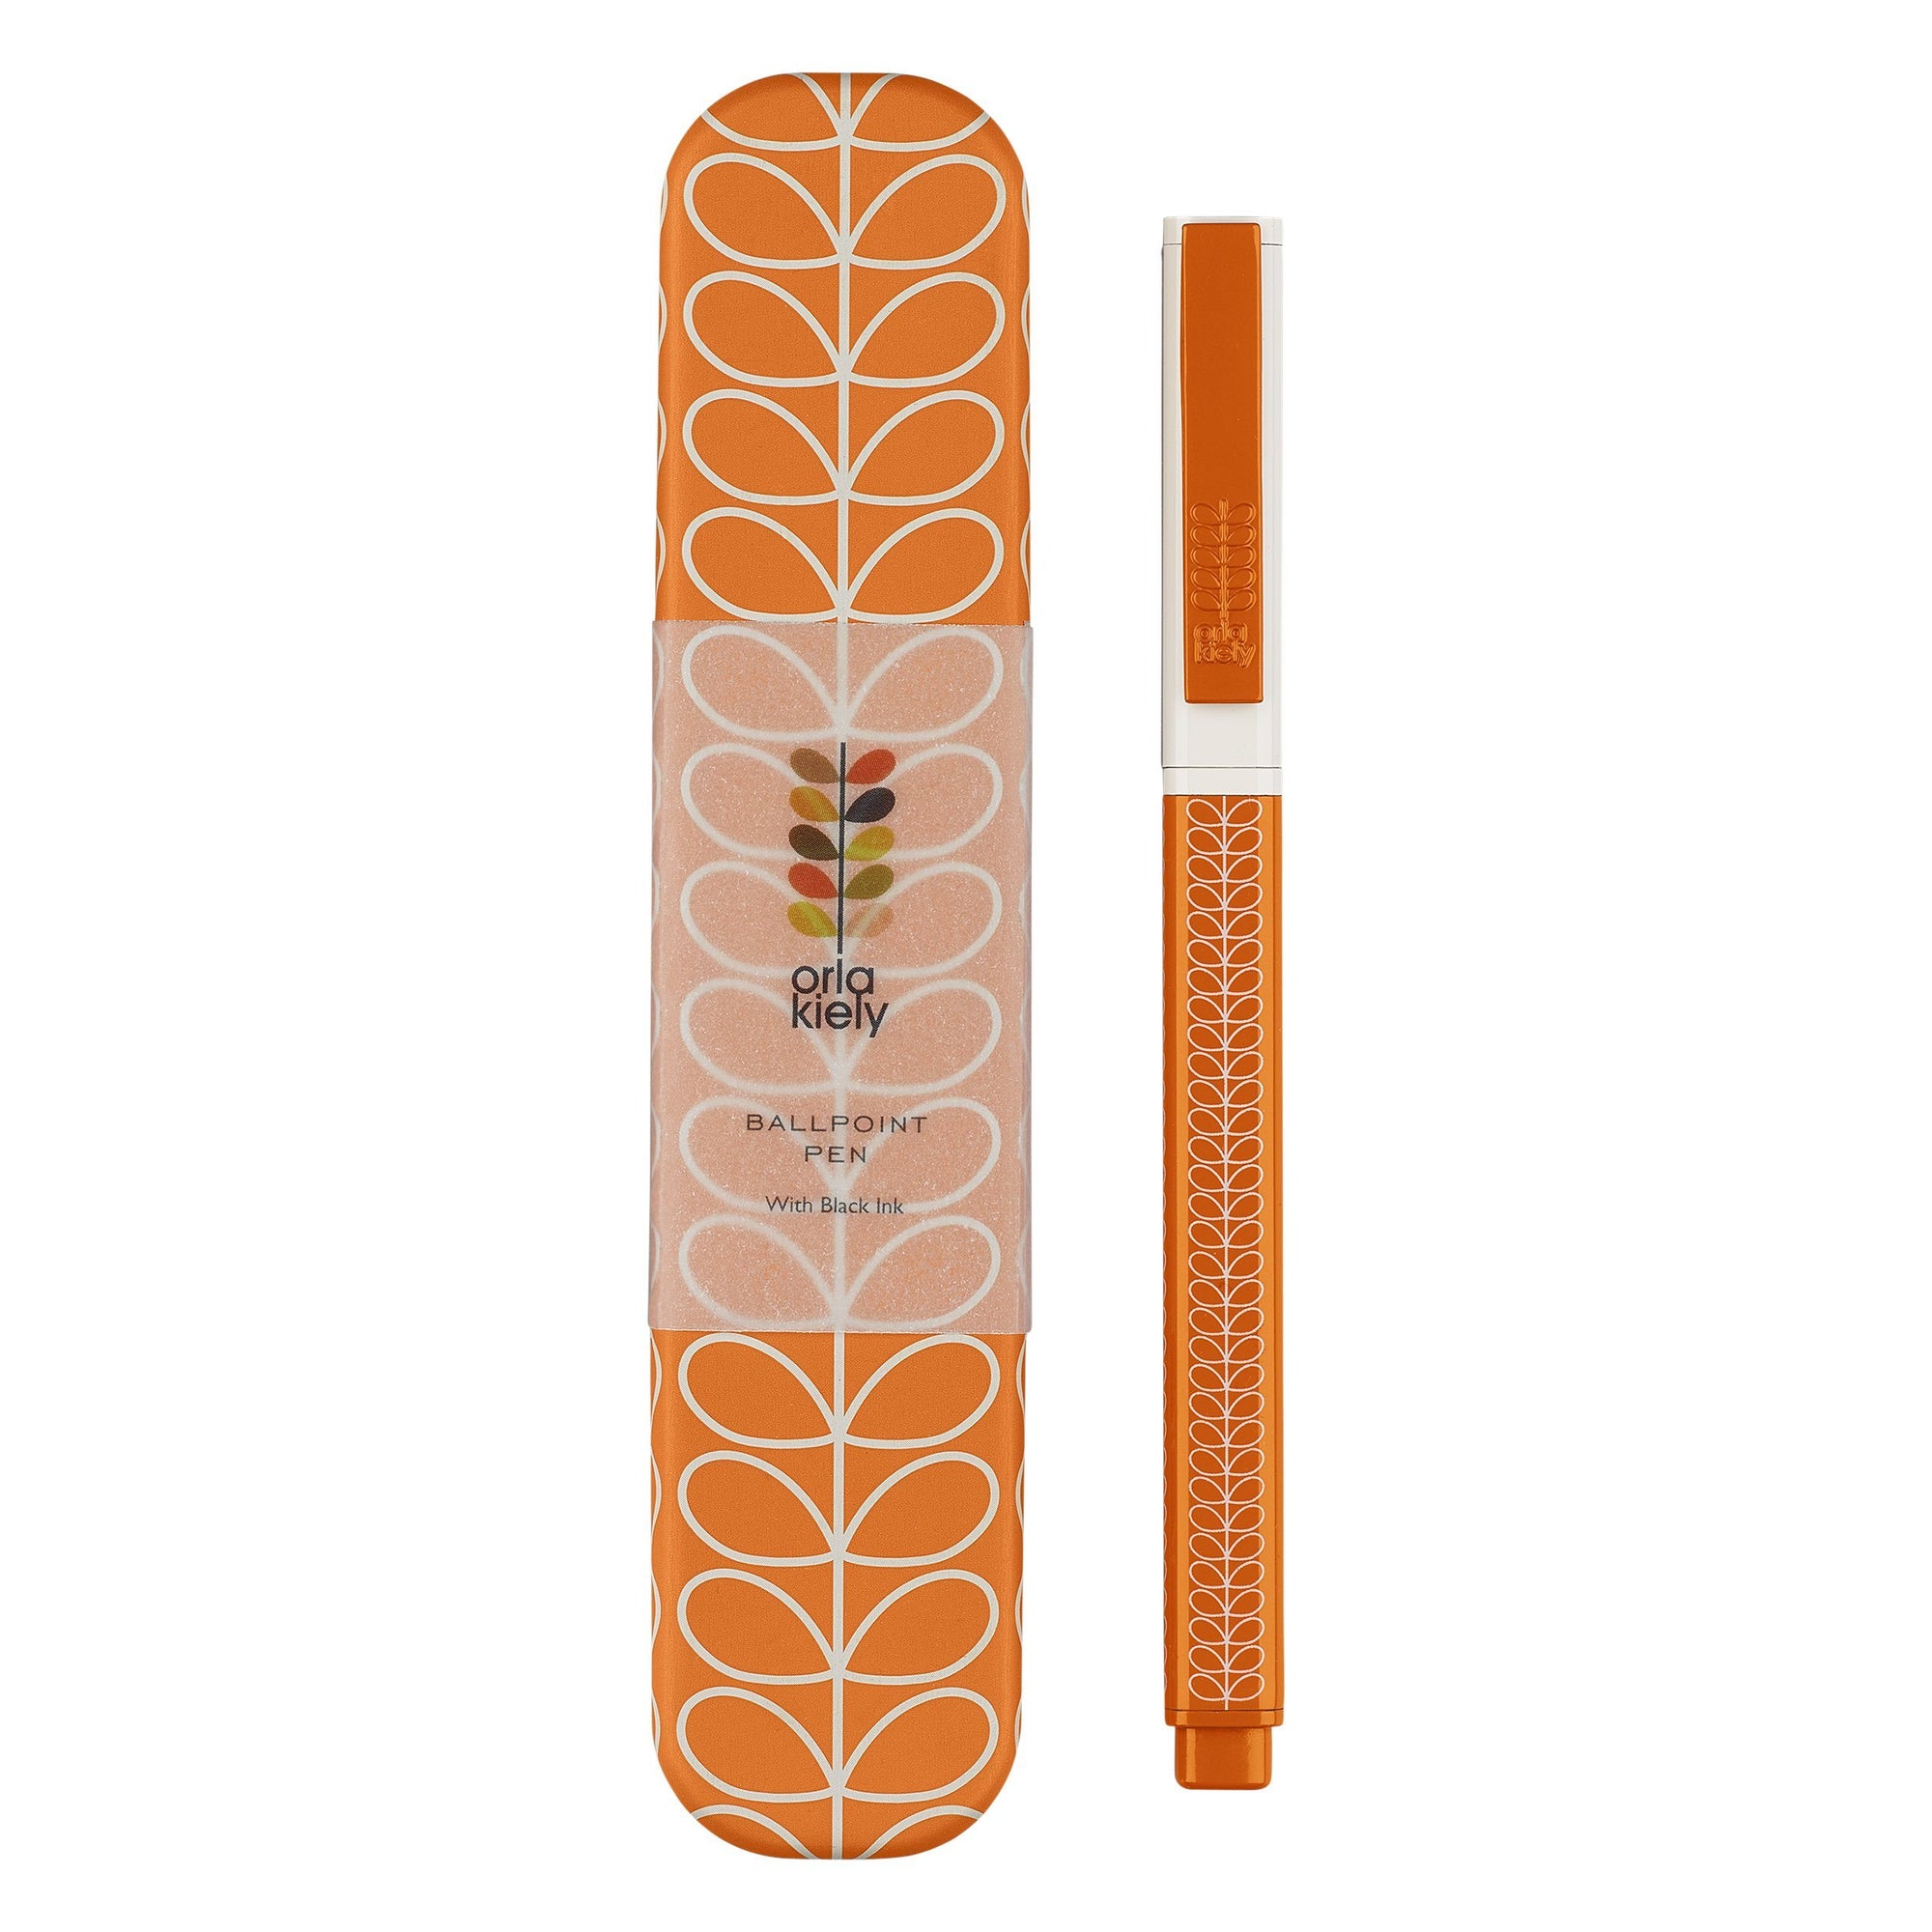 Orla kiely Linear Stem Ballpoint Pen in Orange - BouChic 